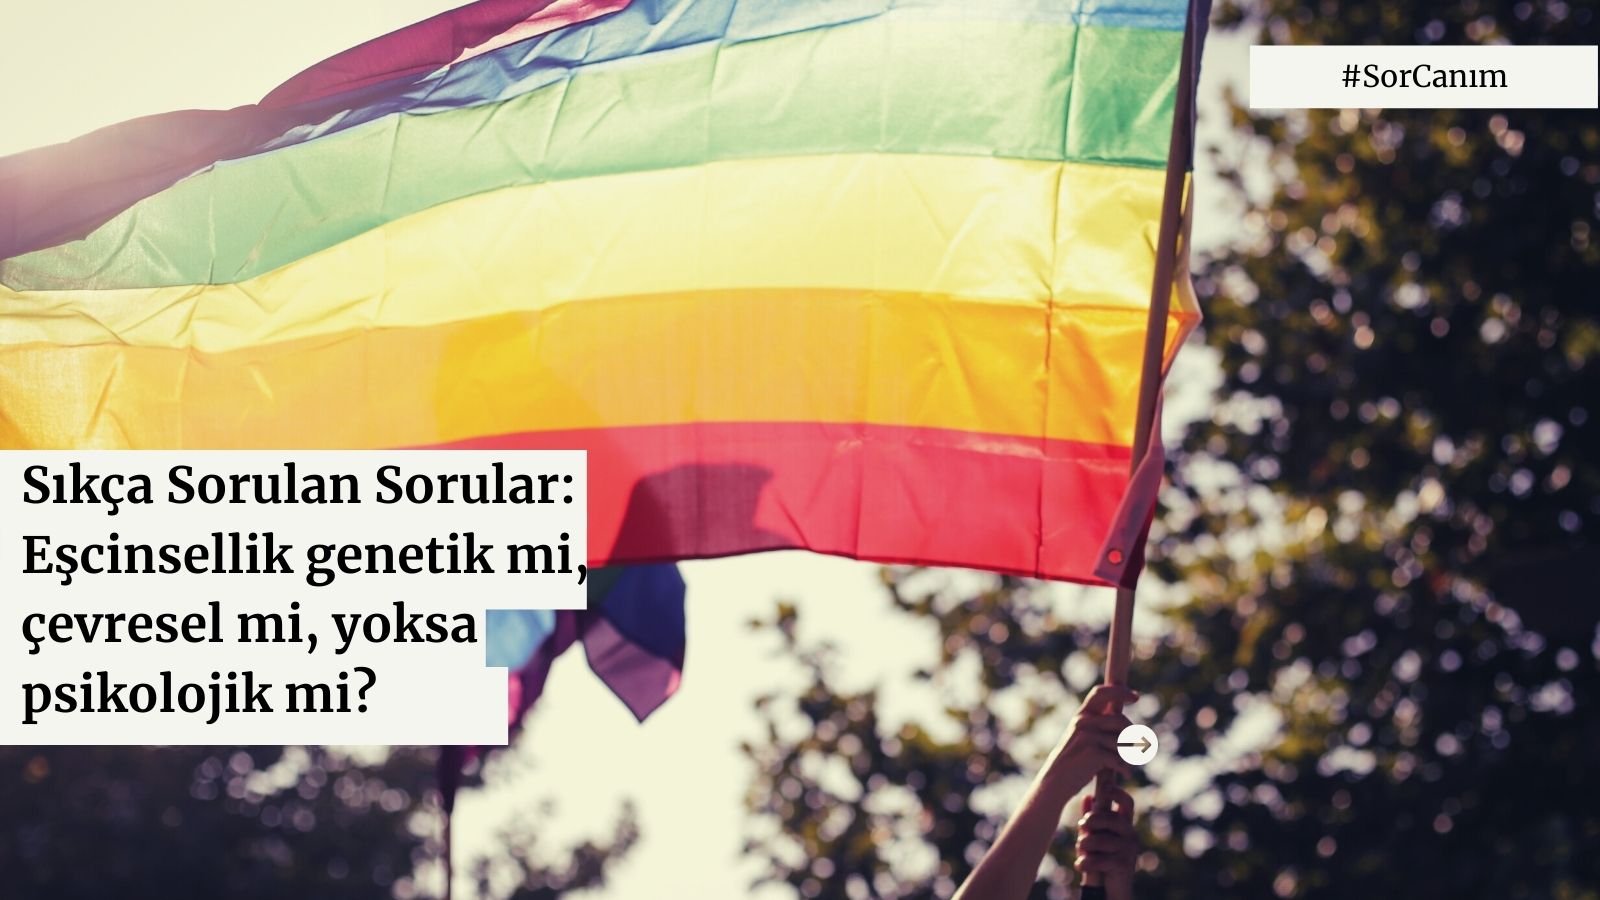 Sor canım: “Eşcinsellik genetik mi, çevresel mi, yoksa psikolojik mi?” Kaos GL - LGBTİ+ Haber Portalı